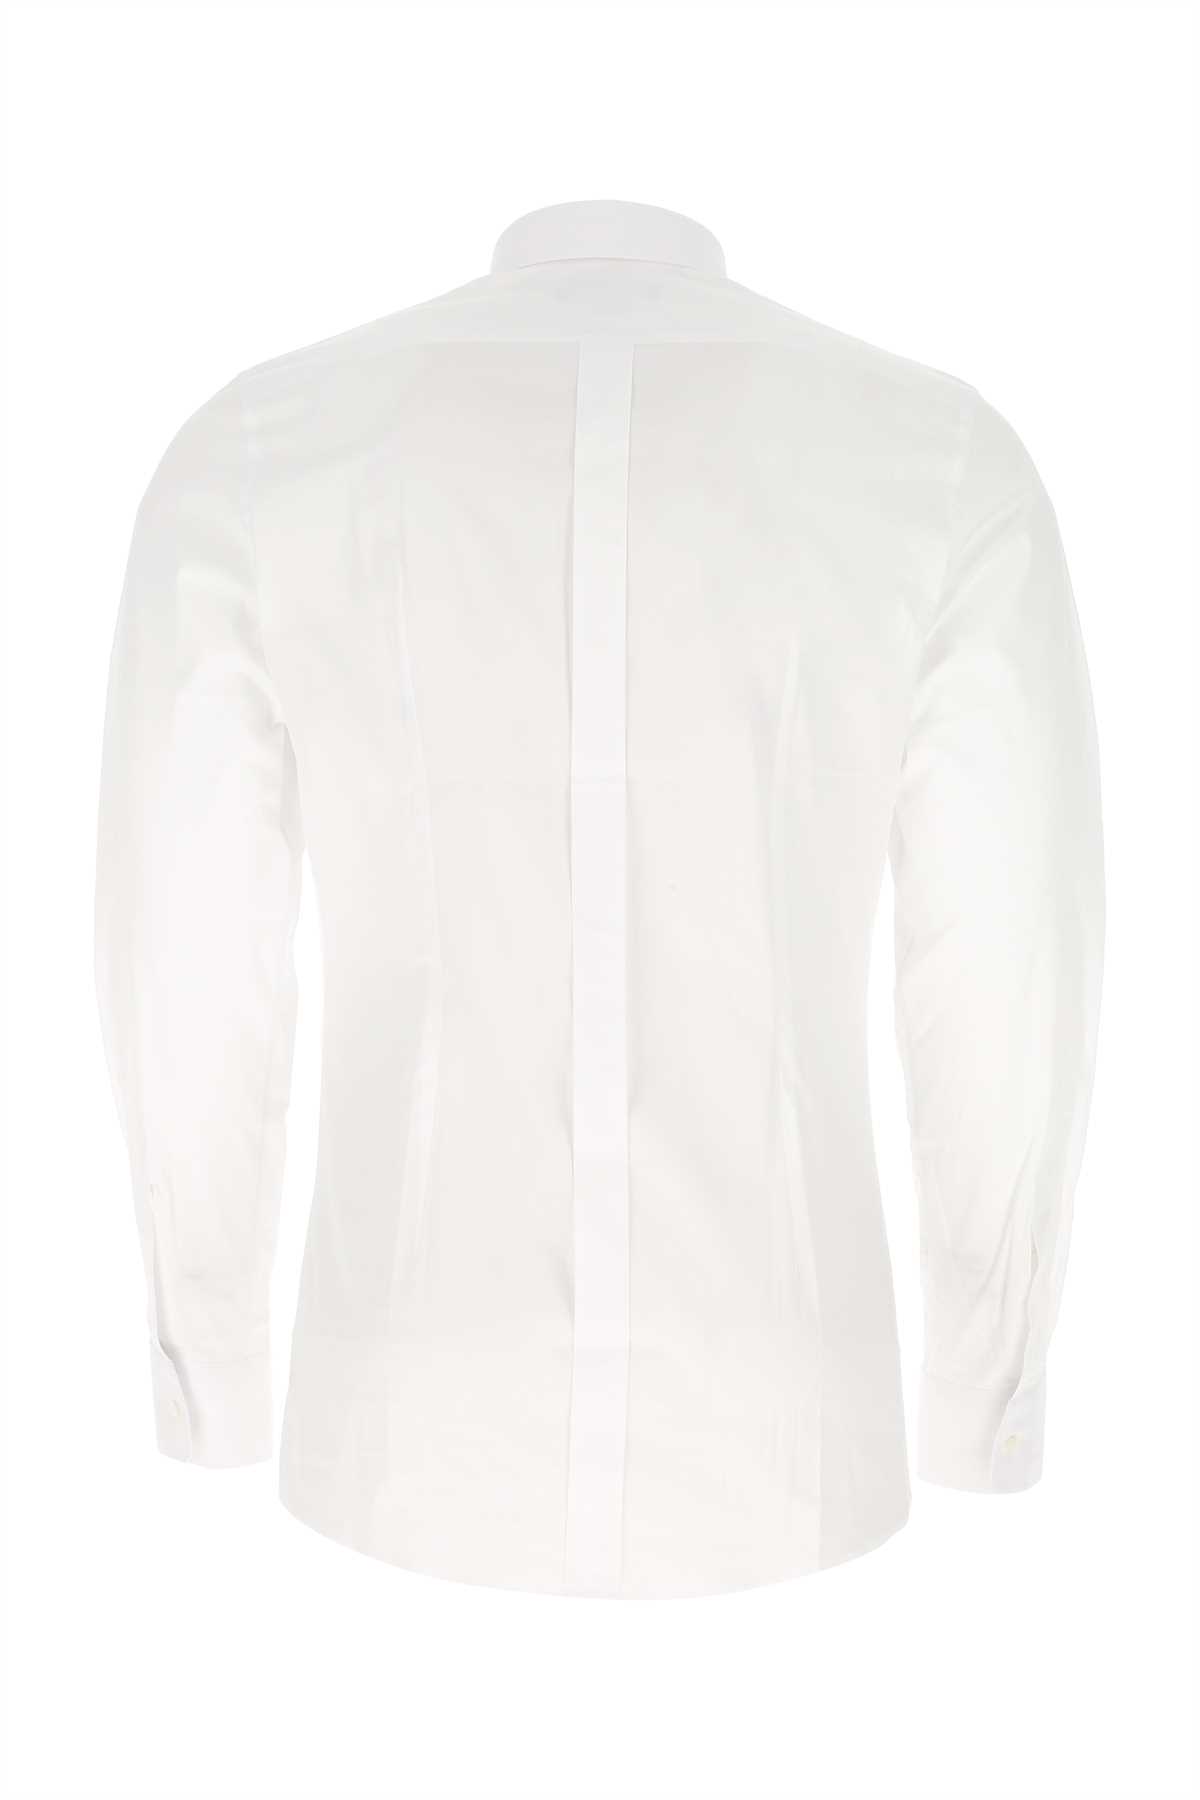 Dolce & Gabbana White Stretch Poplin Shirt In W0800